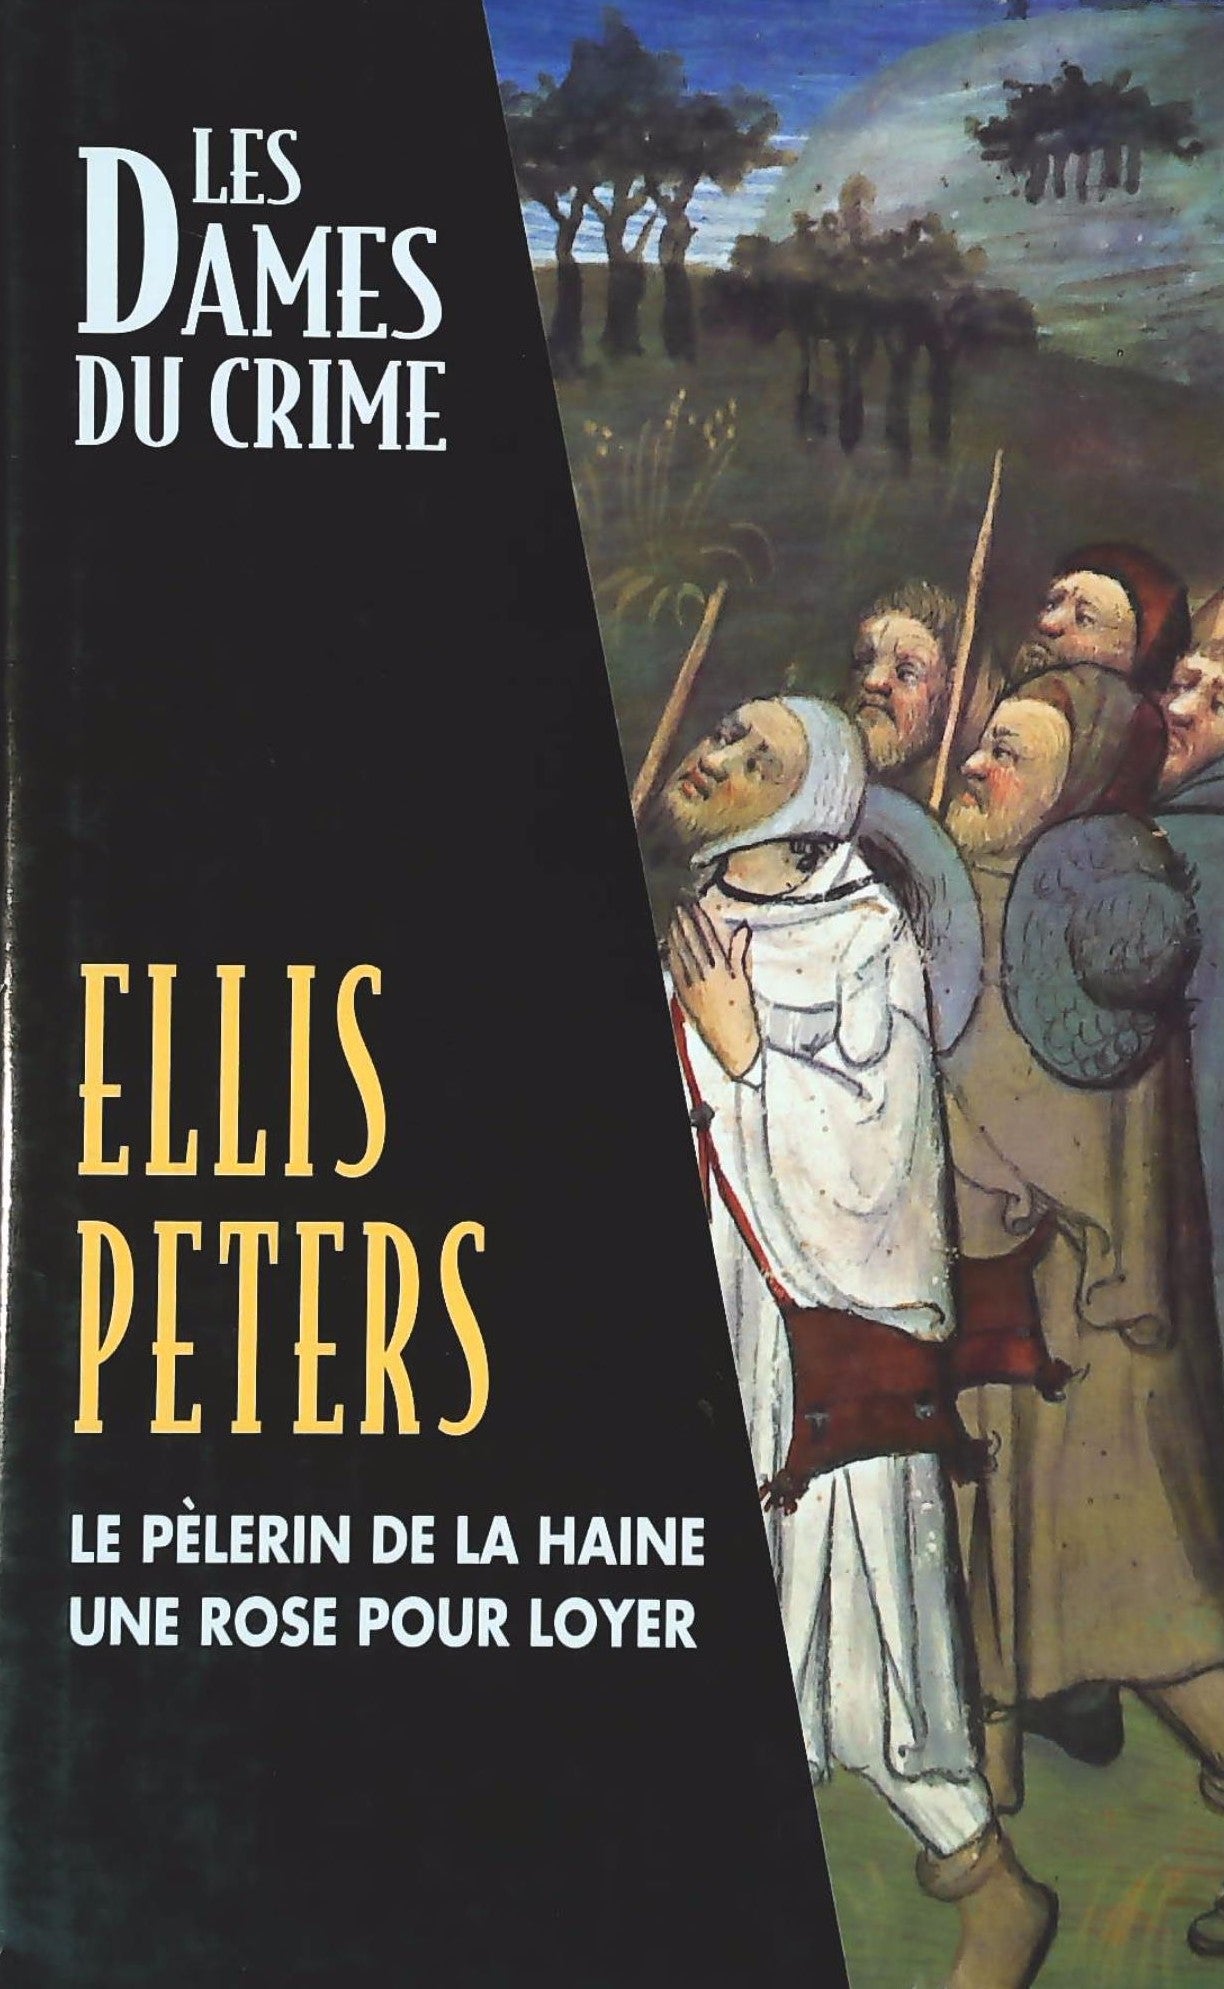 Livre ISBN 2744125229 Les dames du crime : Le pèlerin de la haine -suivi de- Une rose pour loyer (Ellis Peters)